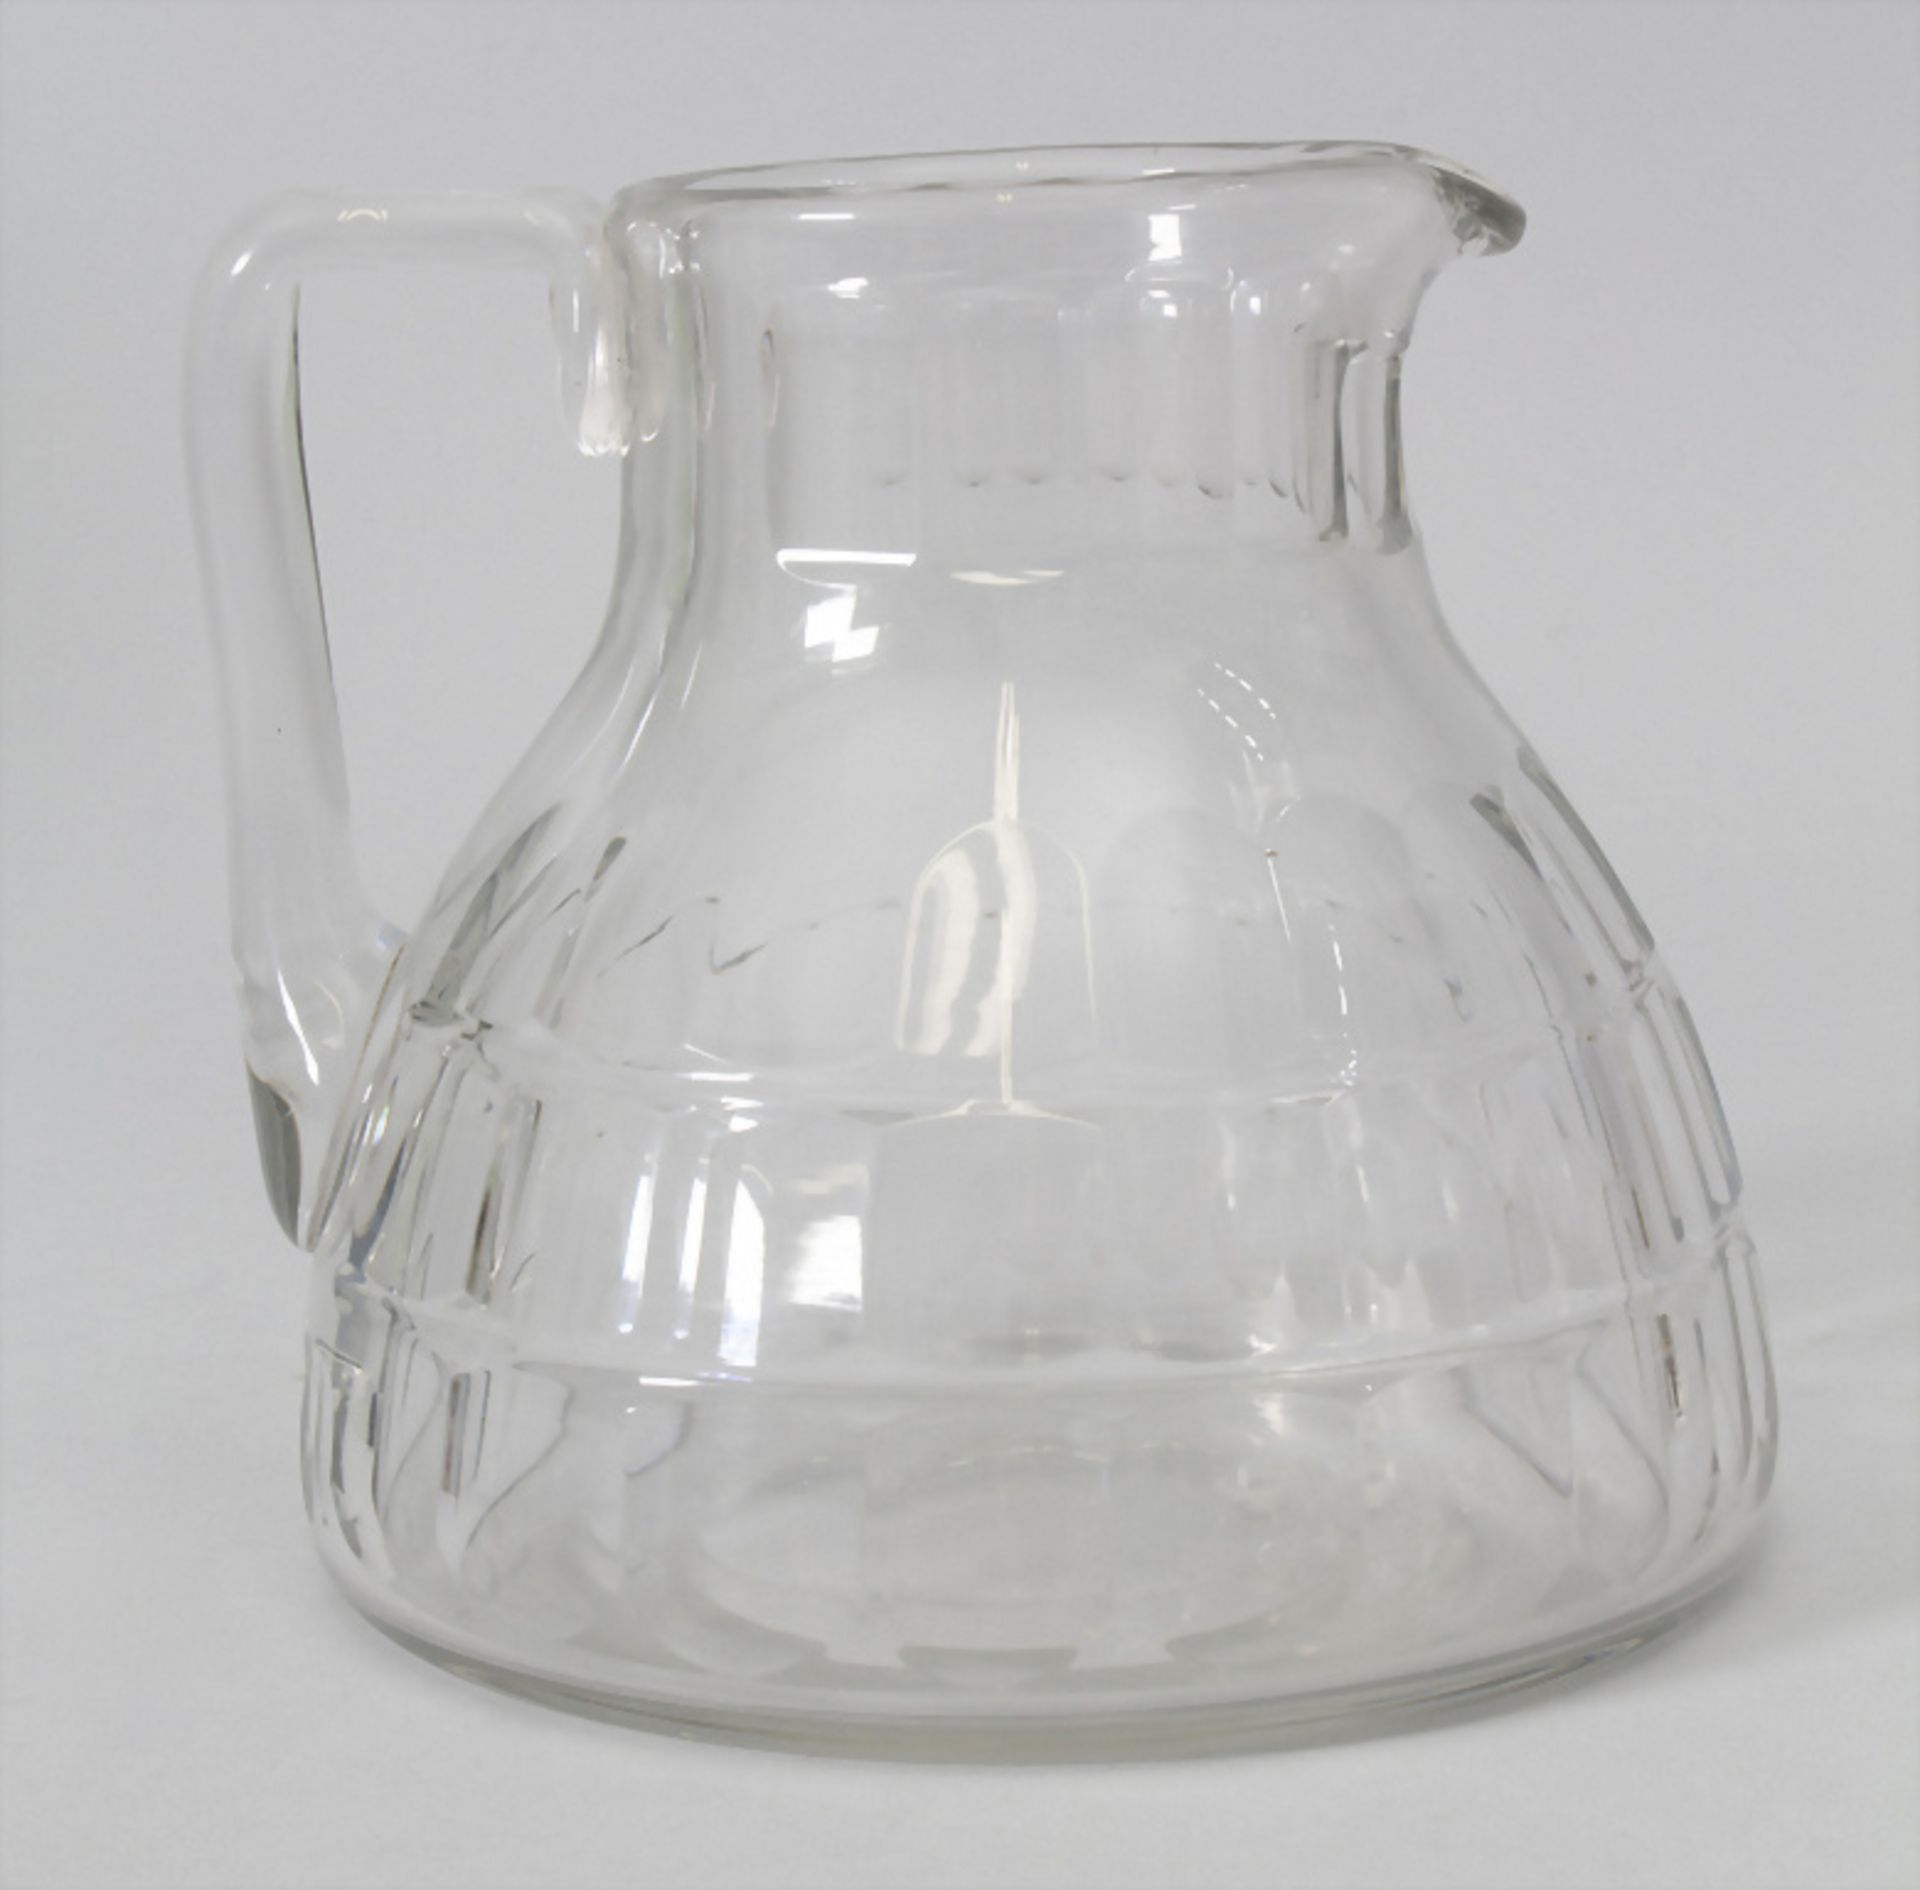 Jugendstil Glaskrug / An Art Nouveau glass jug, Baccarat, Frankreich, um 1900 - Image 2 of 2